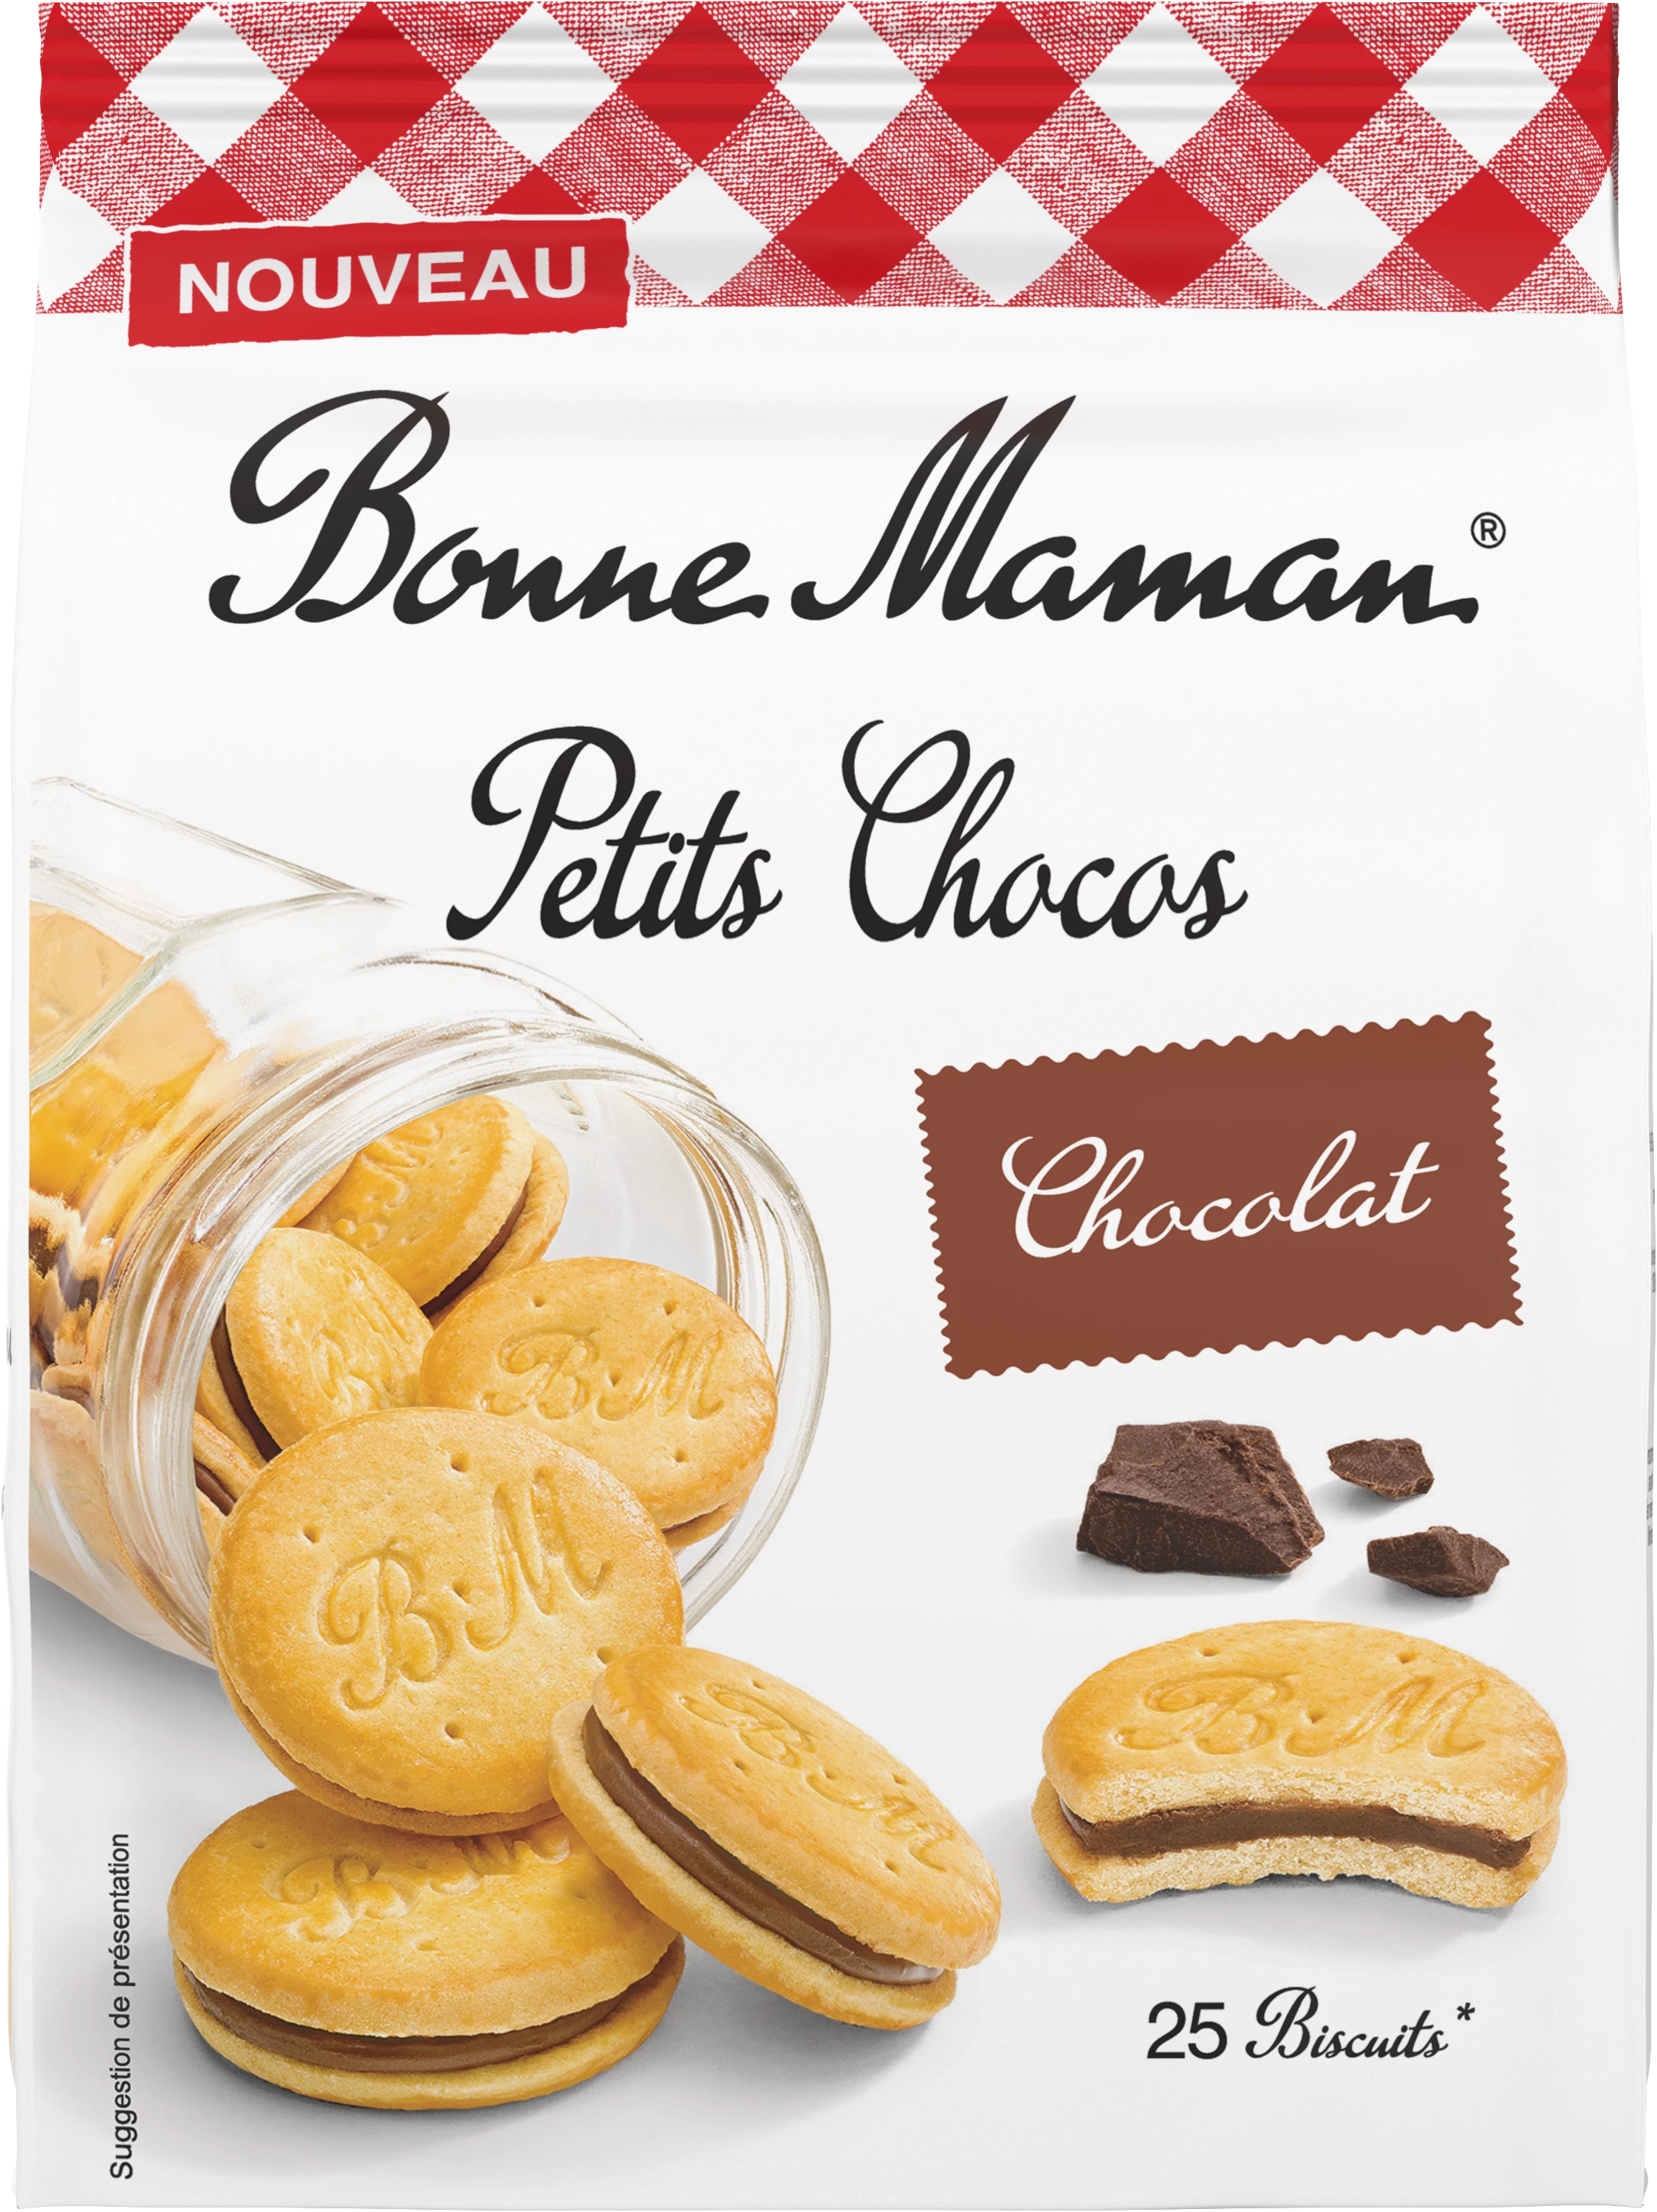 Biscoitos Recheados com Chocolate Petits Chocos 250g - BONNE MAMAN